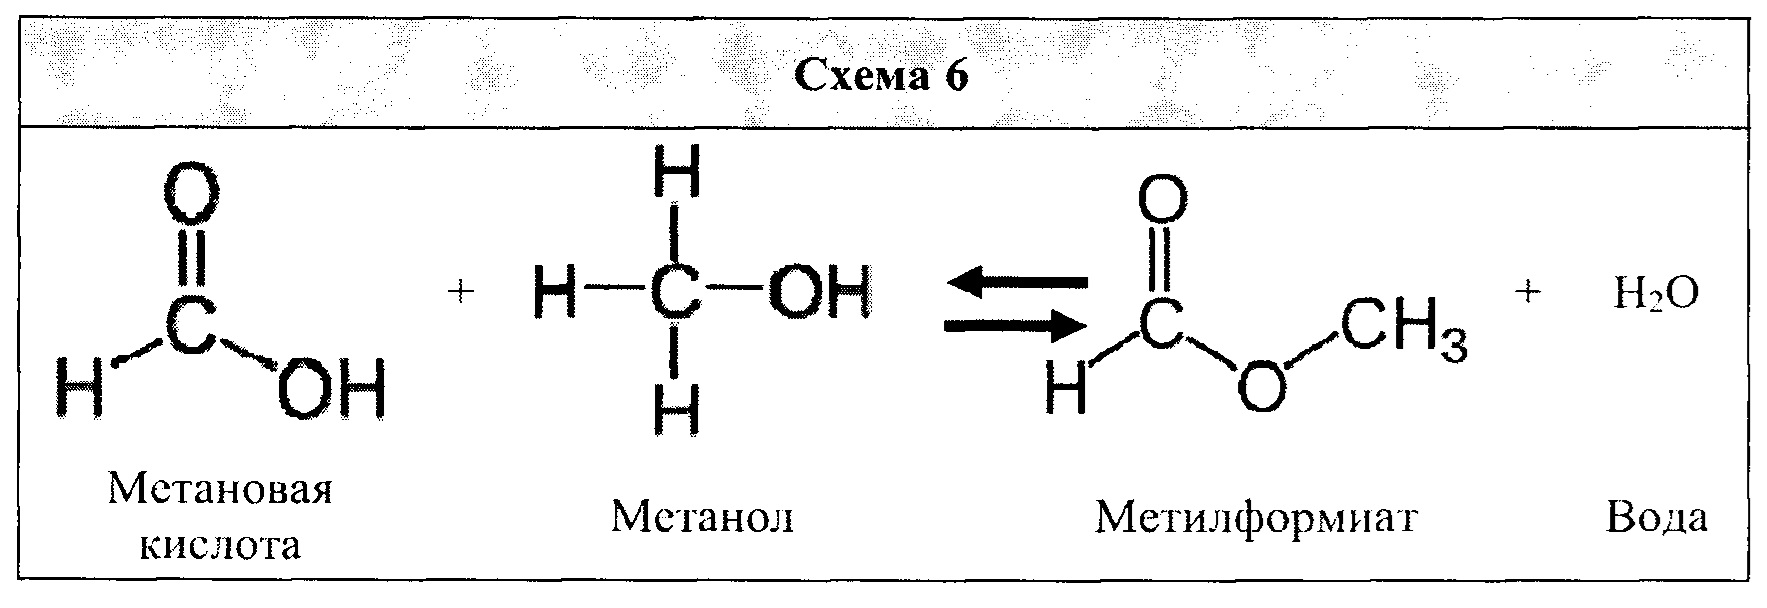 Муравьиная кислота реагирует с метанолом. Метанол метановая кислота получение. Получение метилформиата из метанола. Метановая кислота схема. Метанол в метановую кислоту.